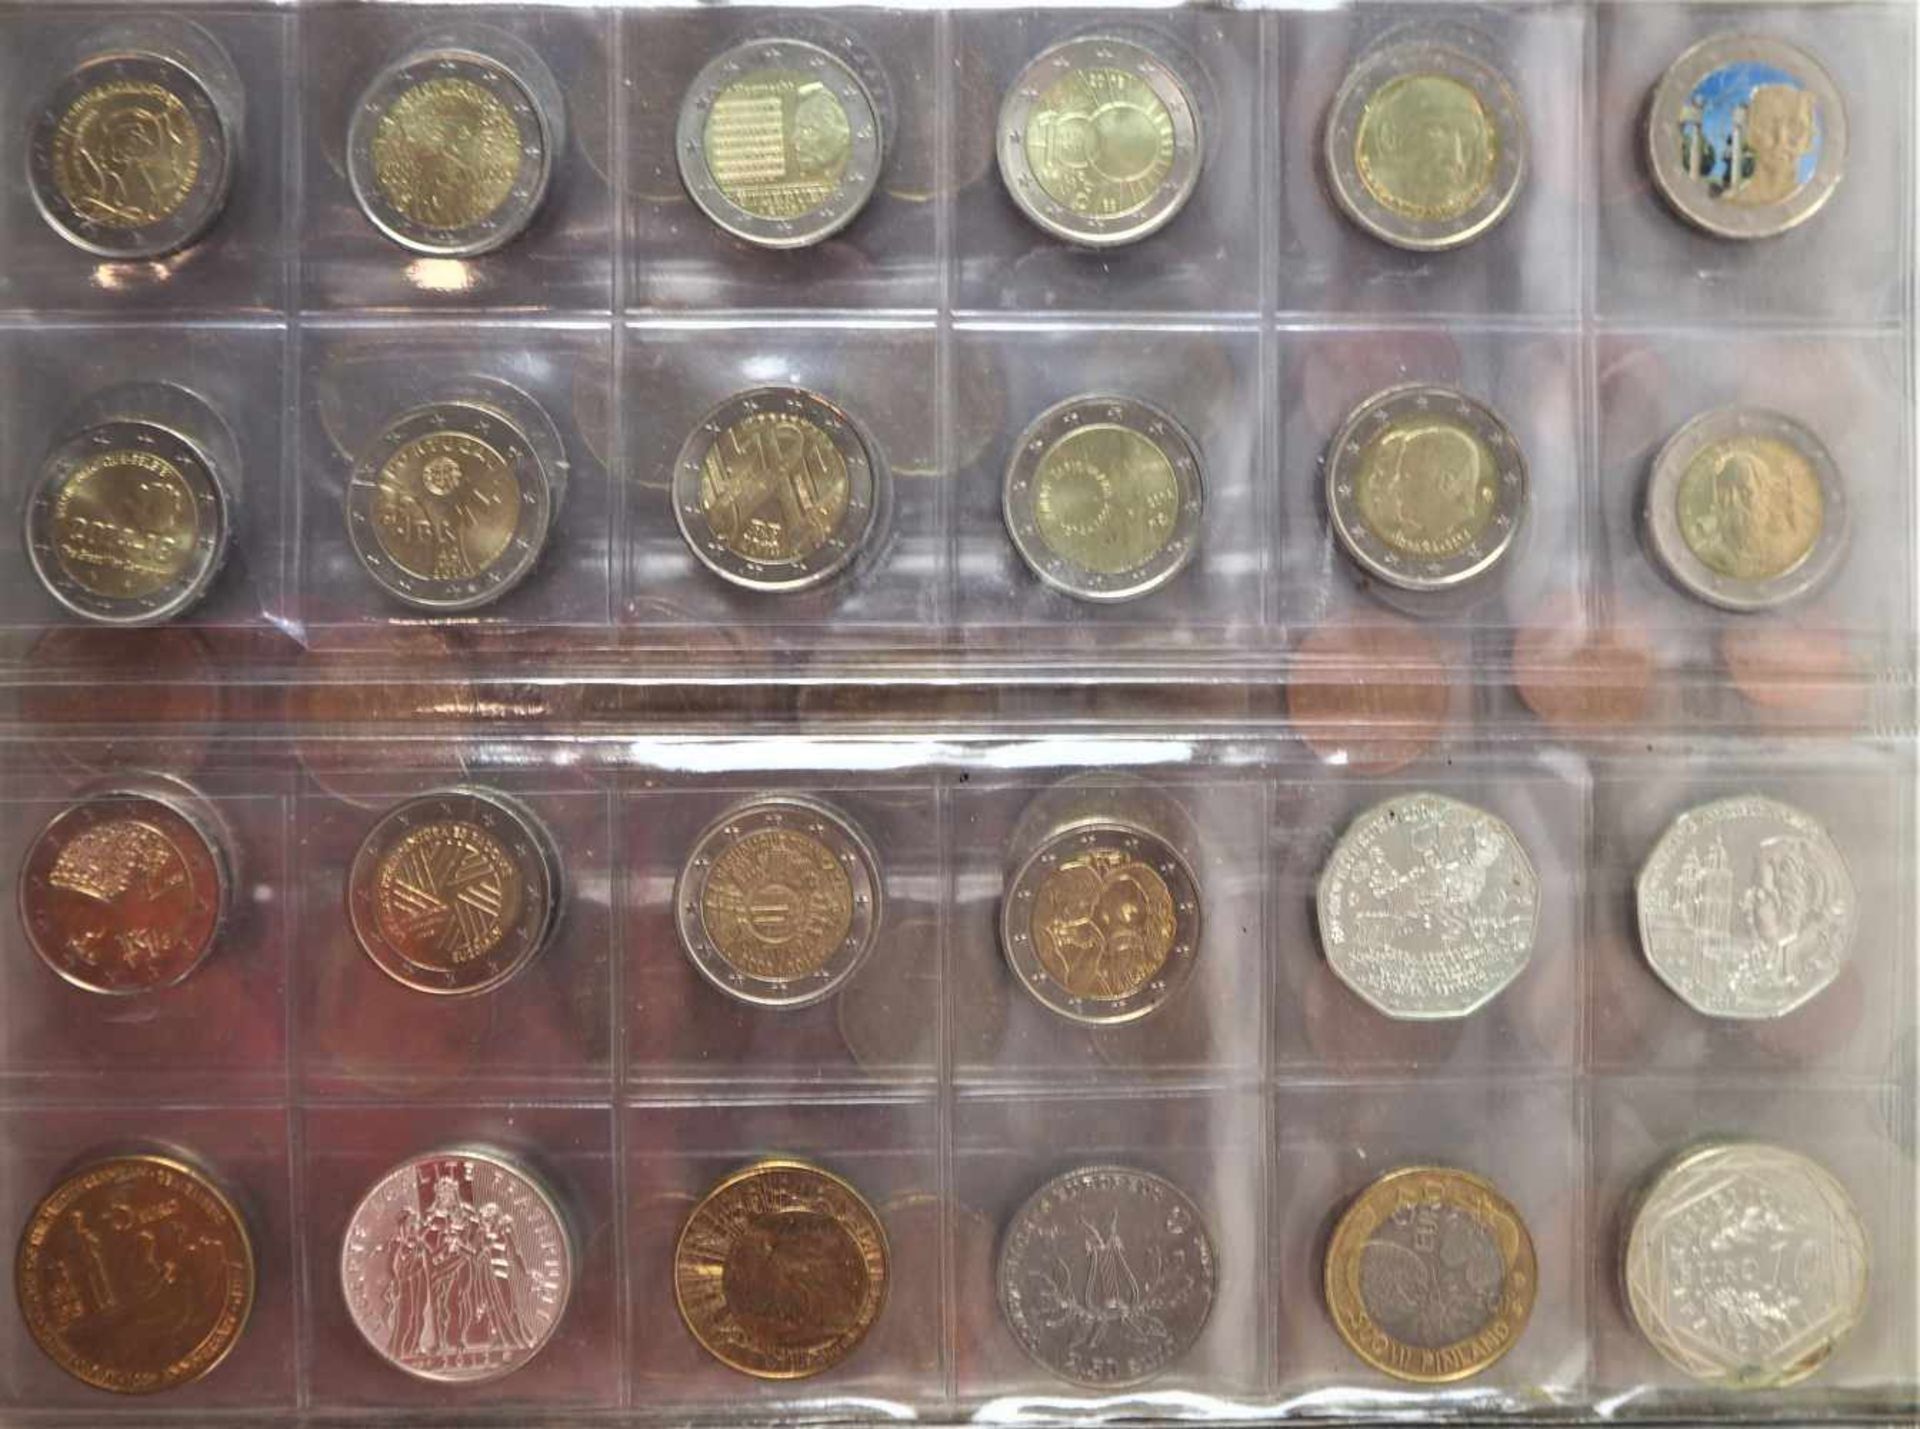 Konvolut umfangreiche Münzsammlung und Geldscheine, Reichsmark, DDR Mark, DM, internationale - Bild 12 aus 20